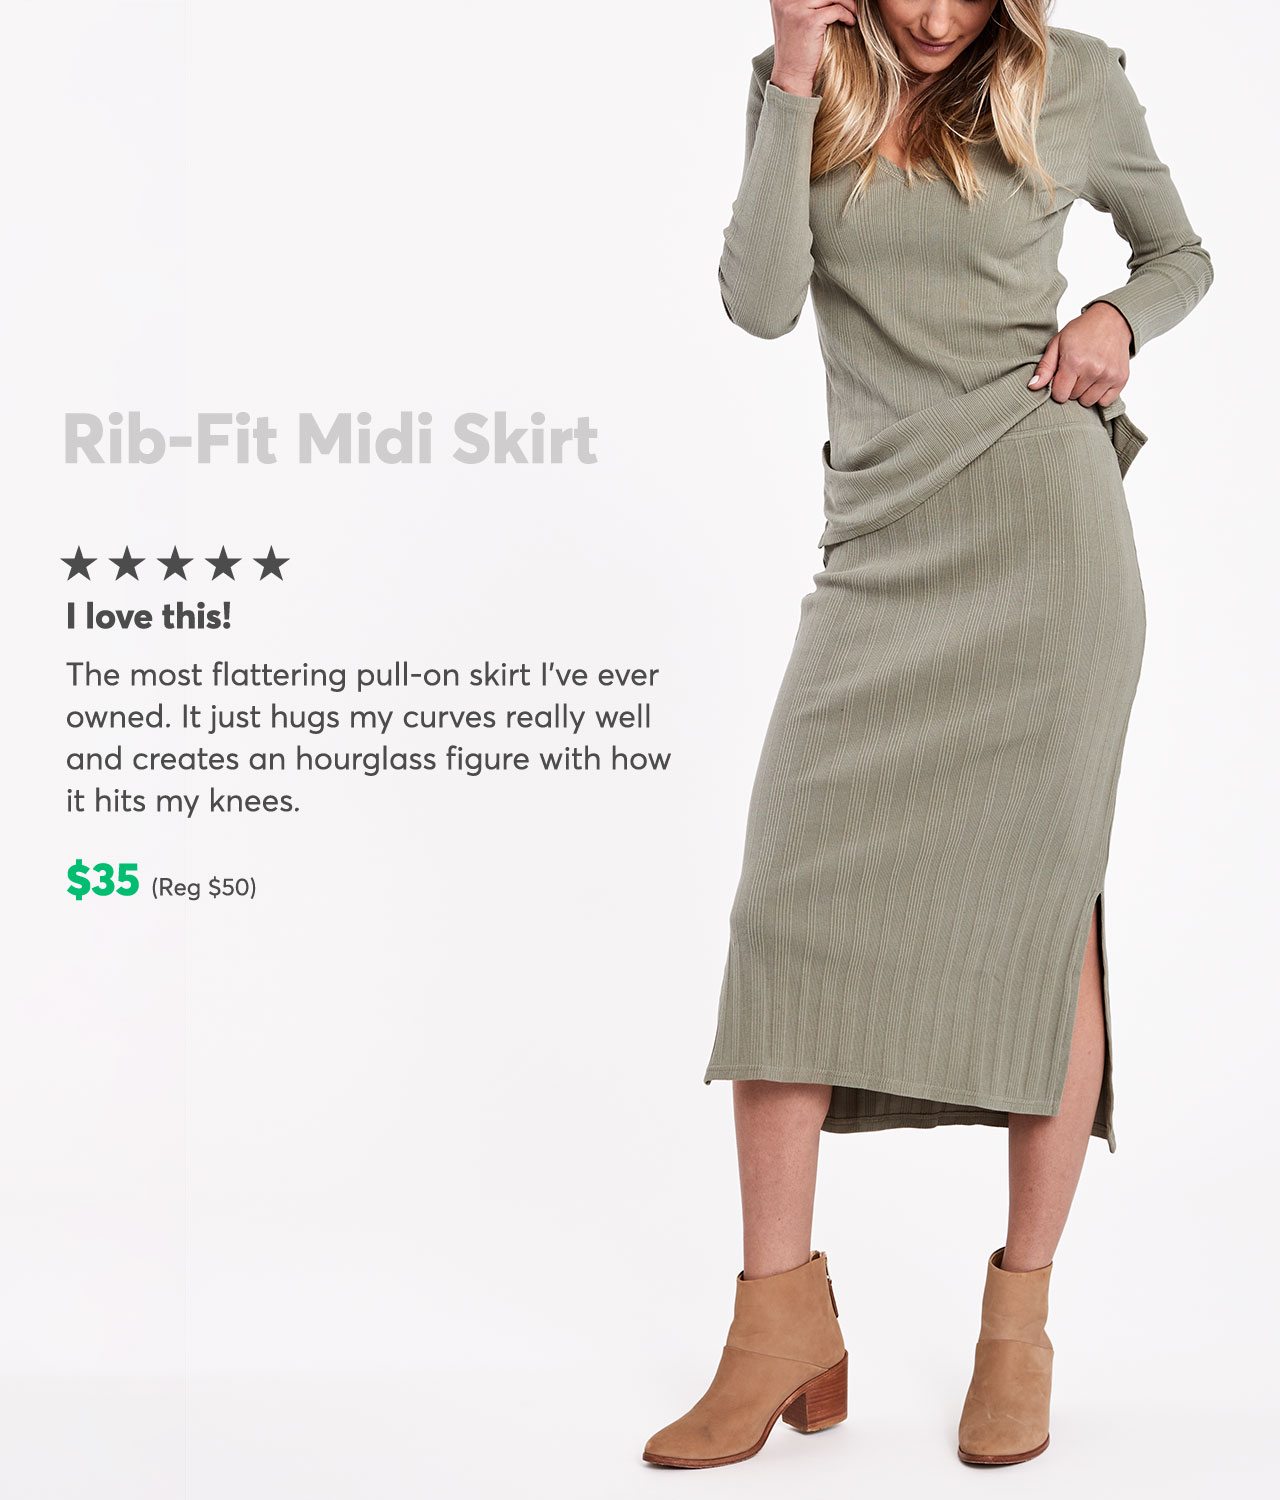 Rib-Fit Midi Skirt $35